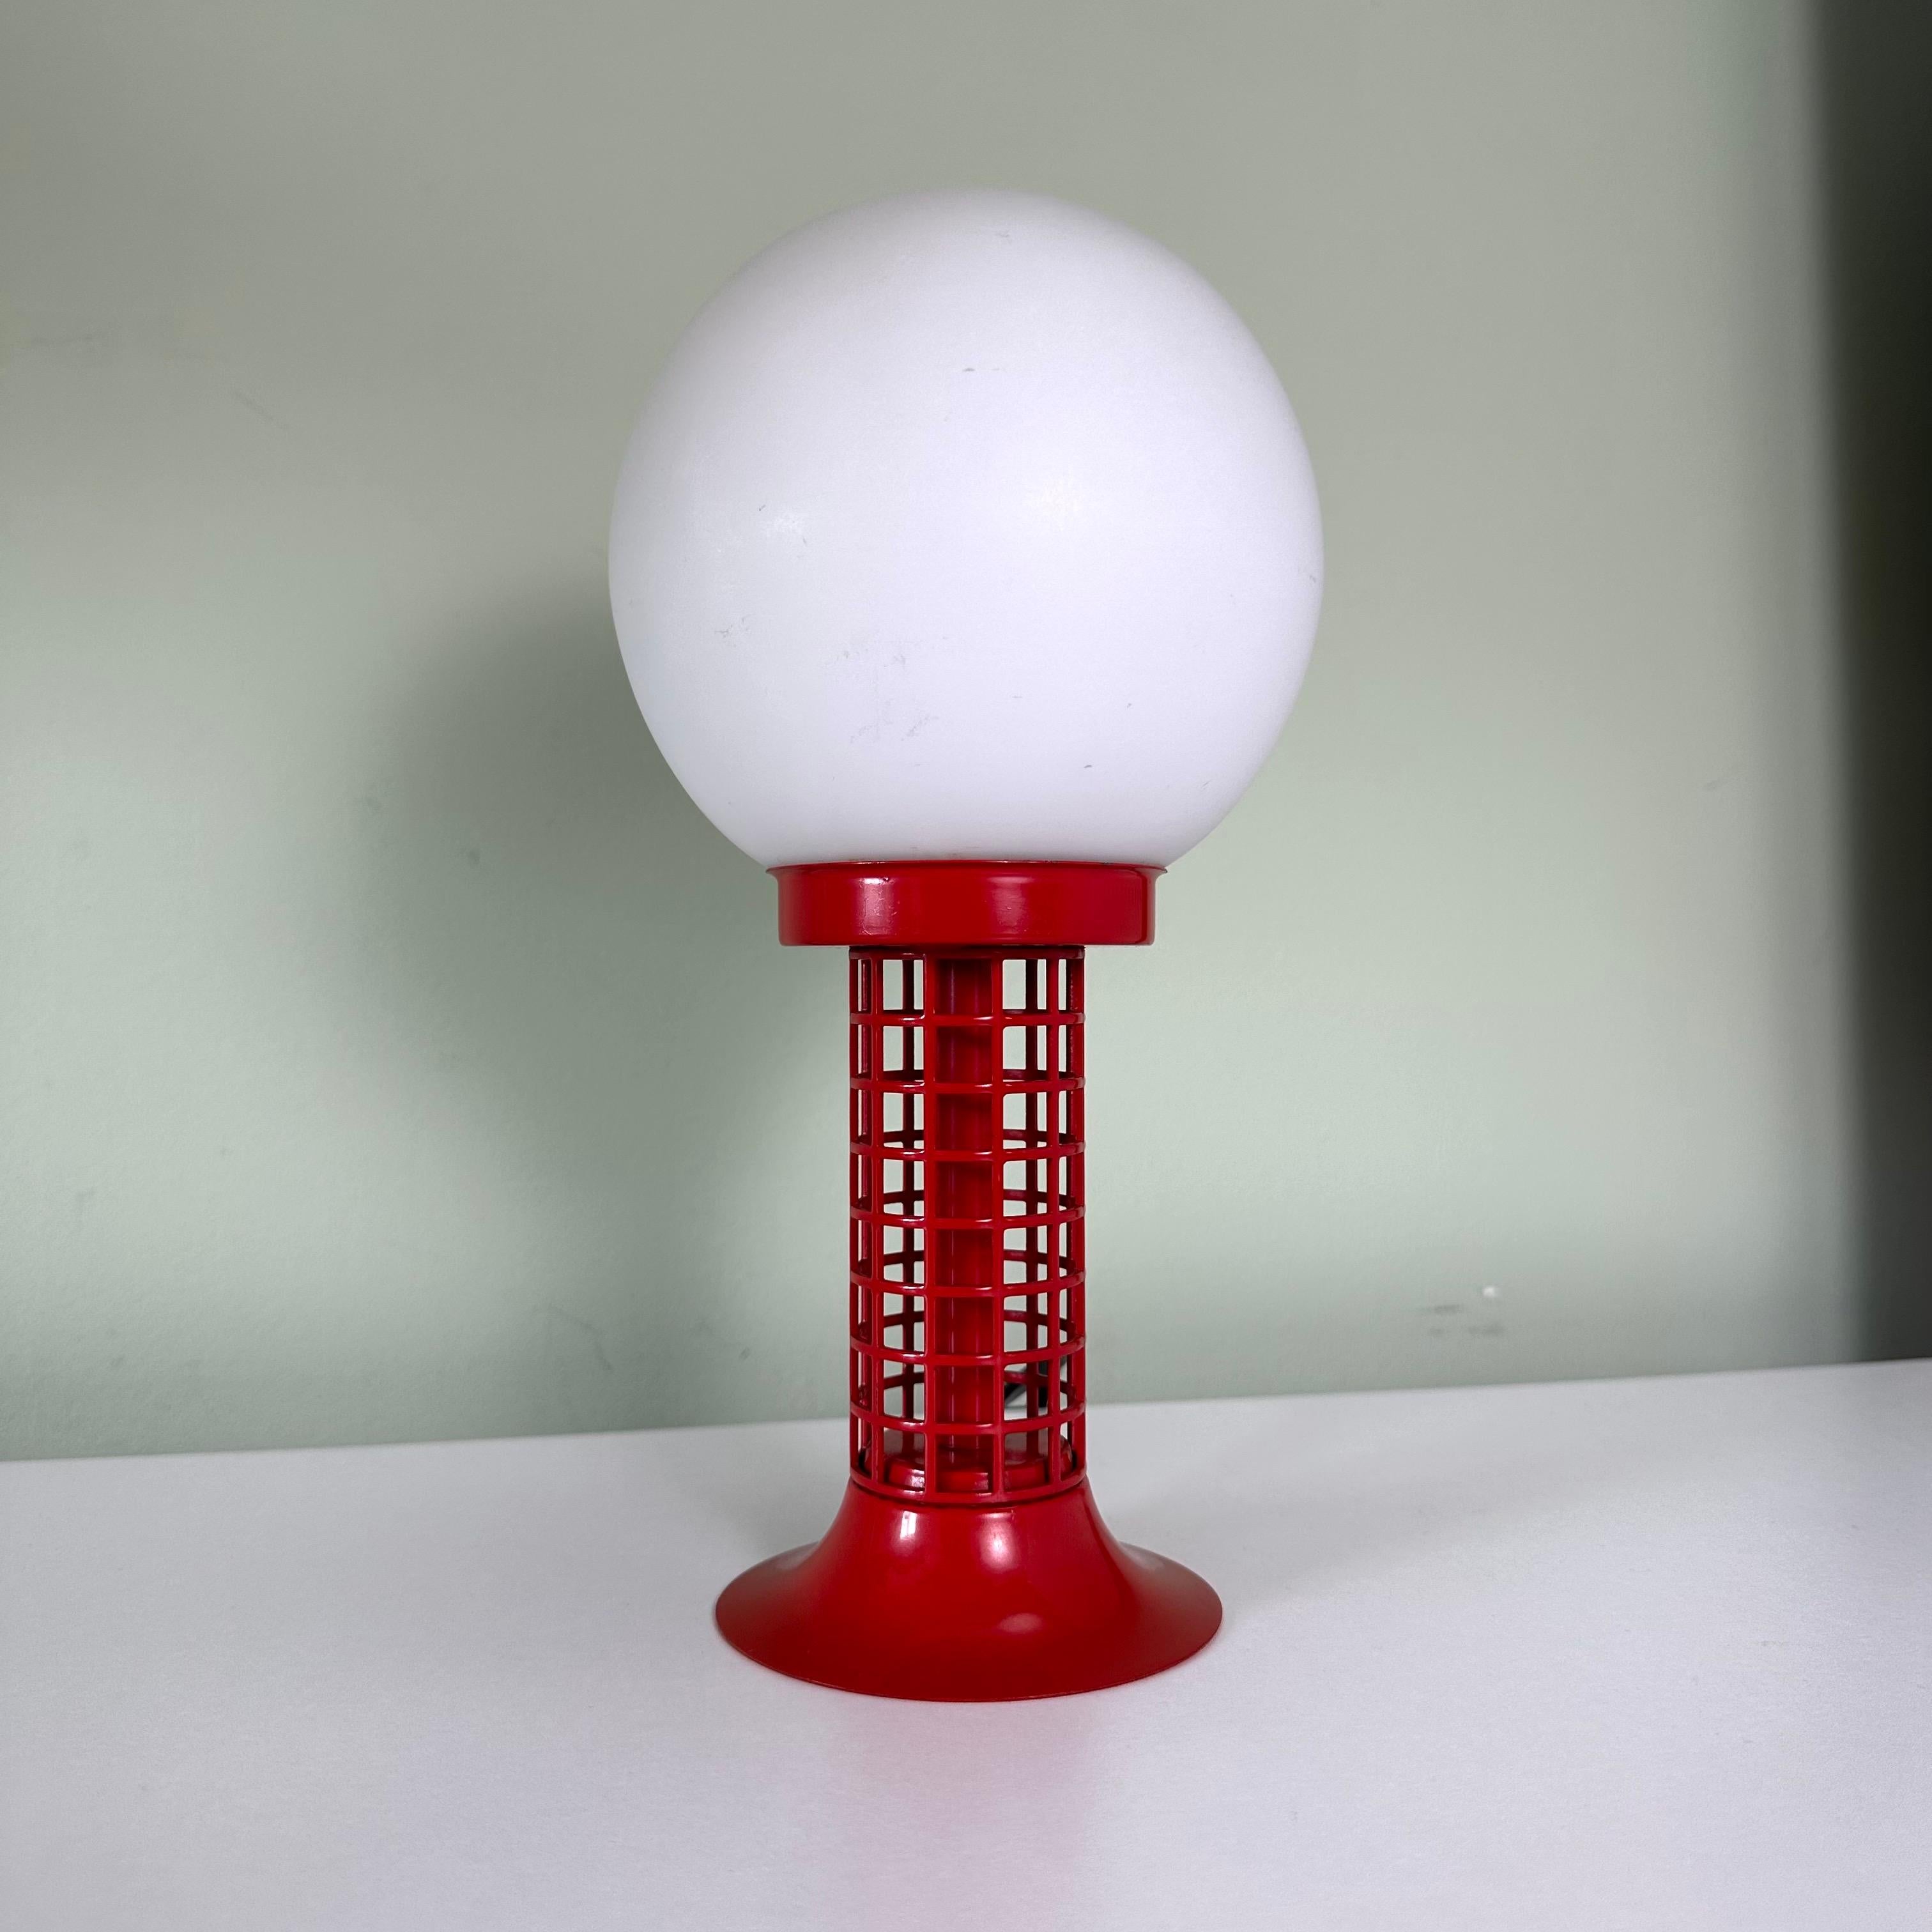 Il s'agit d'une seule lampe de table vintage des années 1970 de style moderniste avec un globe en verre blanc et une base en métal rouge. Jouant sur les couleurs primaires rouge et blanc, la moitié supérieure de la lampe est constituée d'un